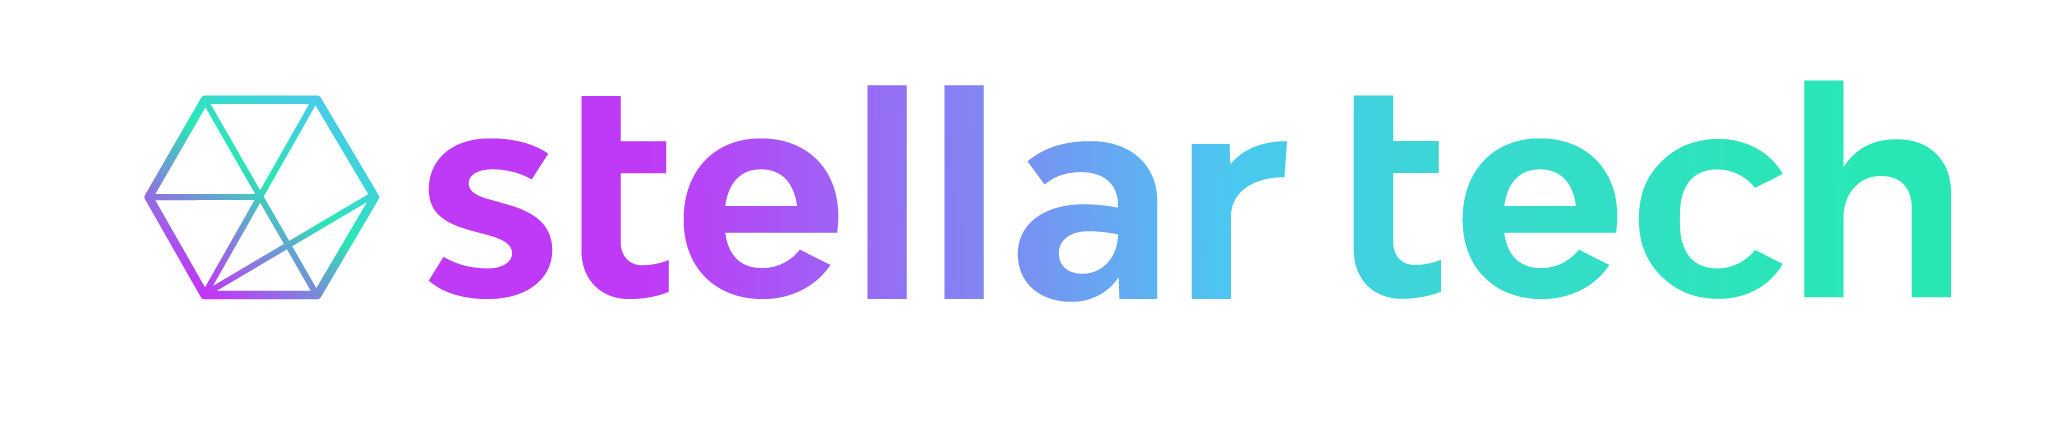 Stellar full Logo - Influencer marketing platform